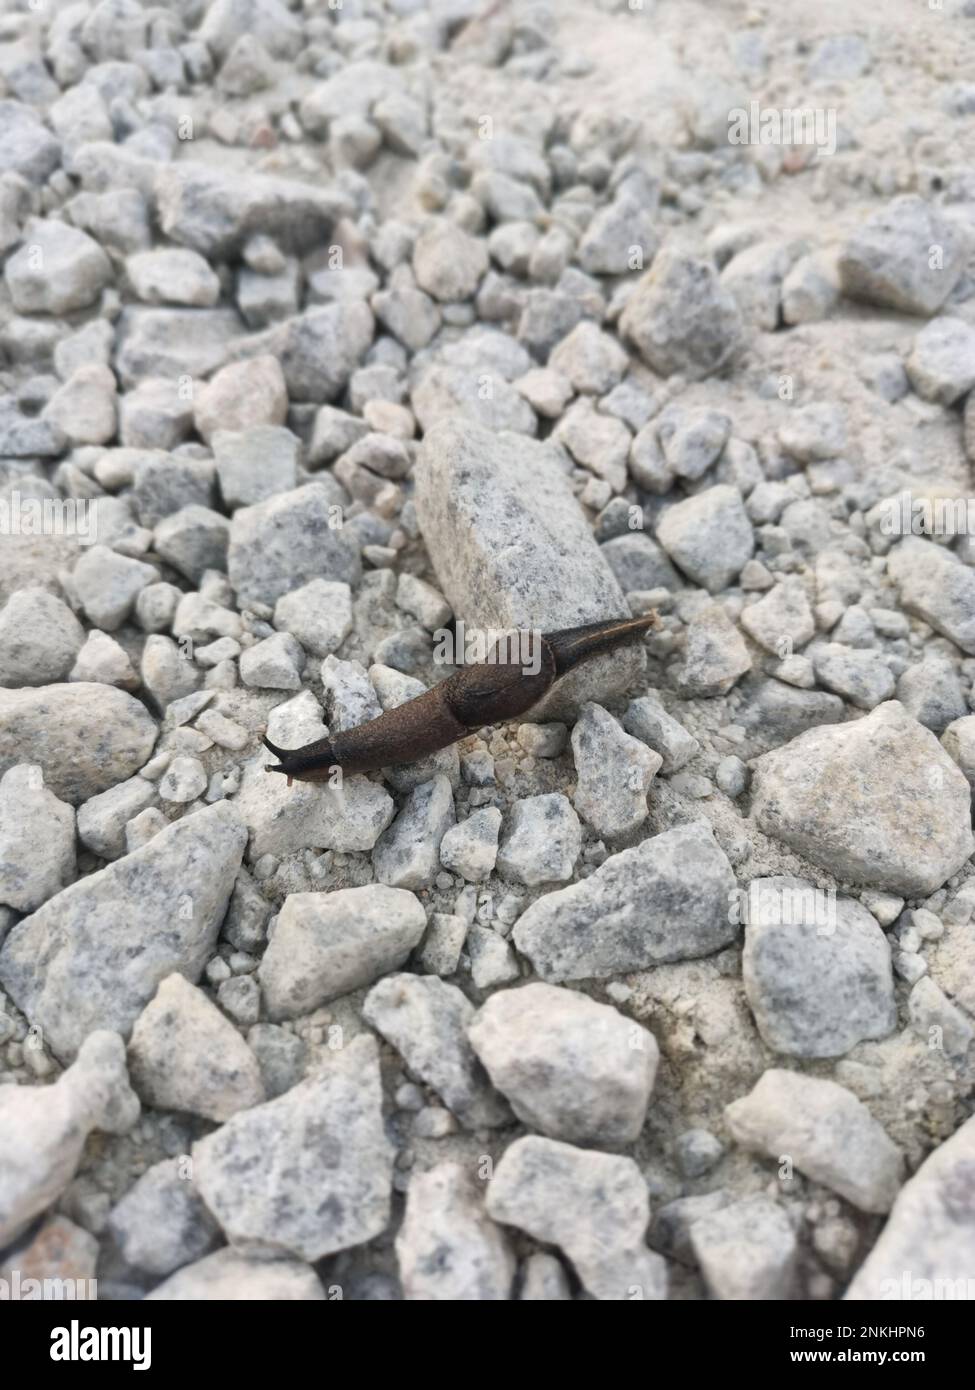 deroceras leave slug crawling on the stony ground Stock Photo